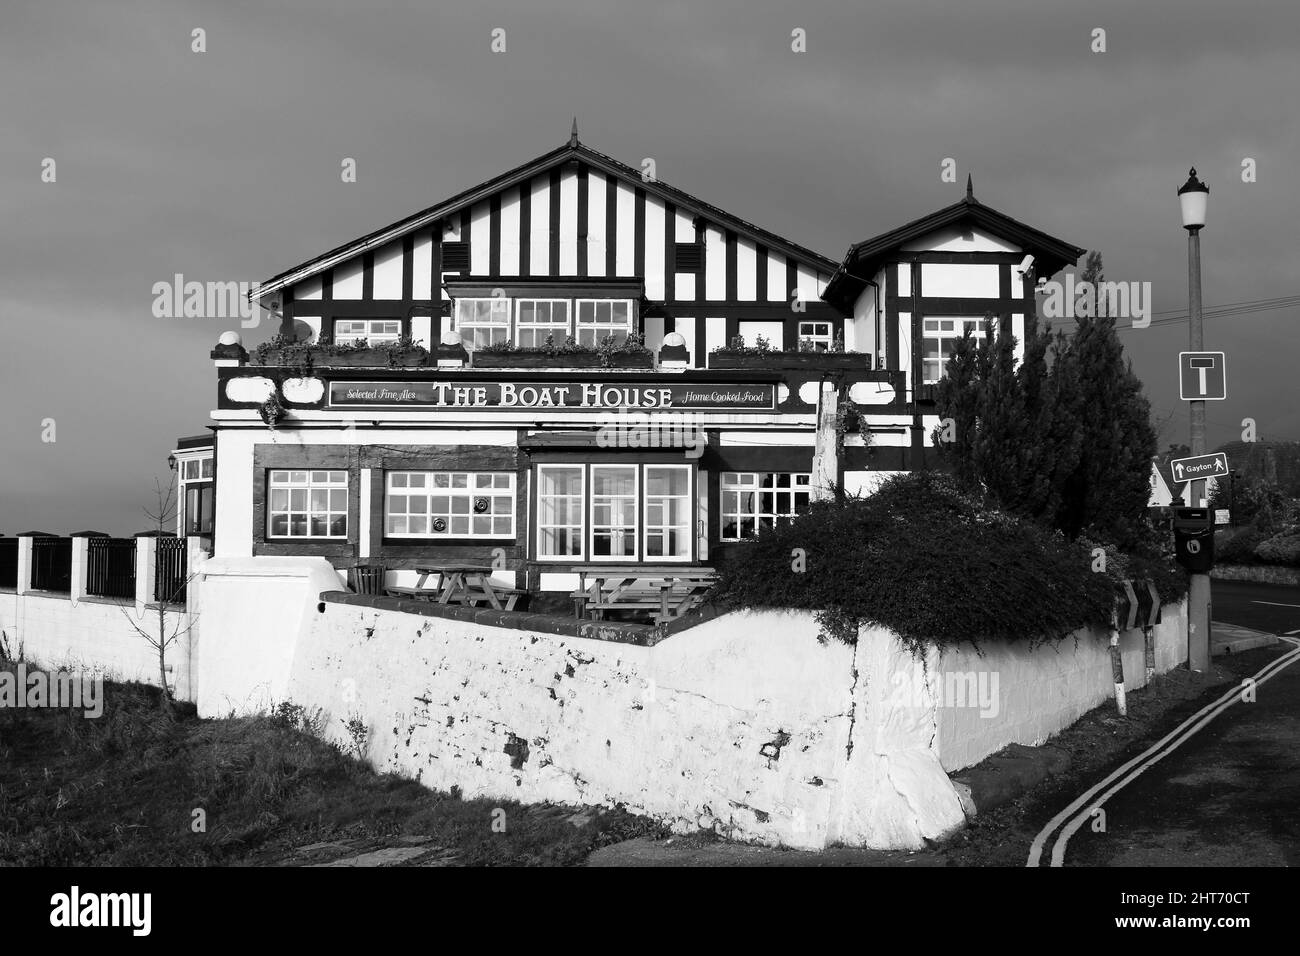 Le Boat House Pub est situé à la périphérie de Parkgate Marsh/Gayton Sands RSPB, Dee Estuary, Parkgate, Wirral, Royaume-Uni Banque D'Images